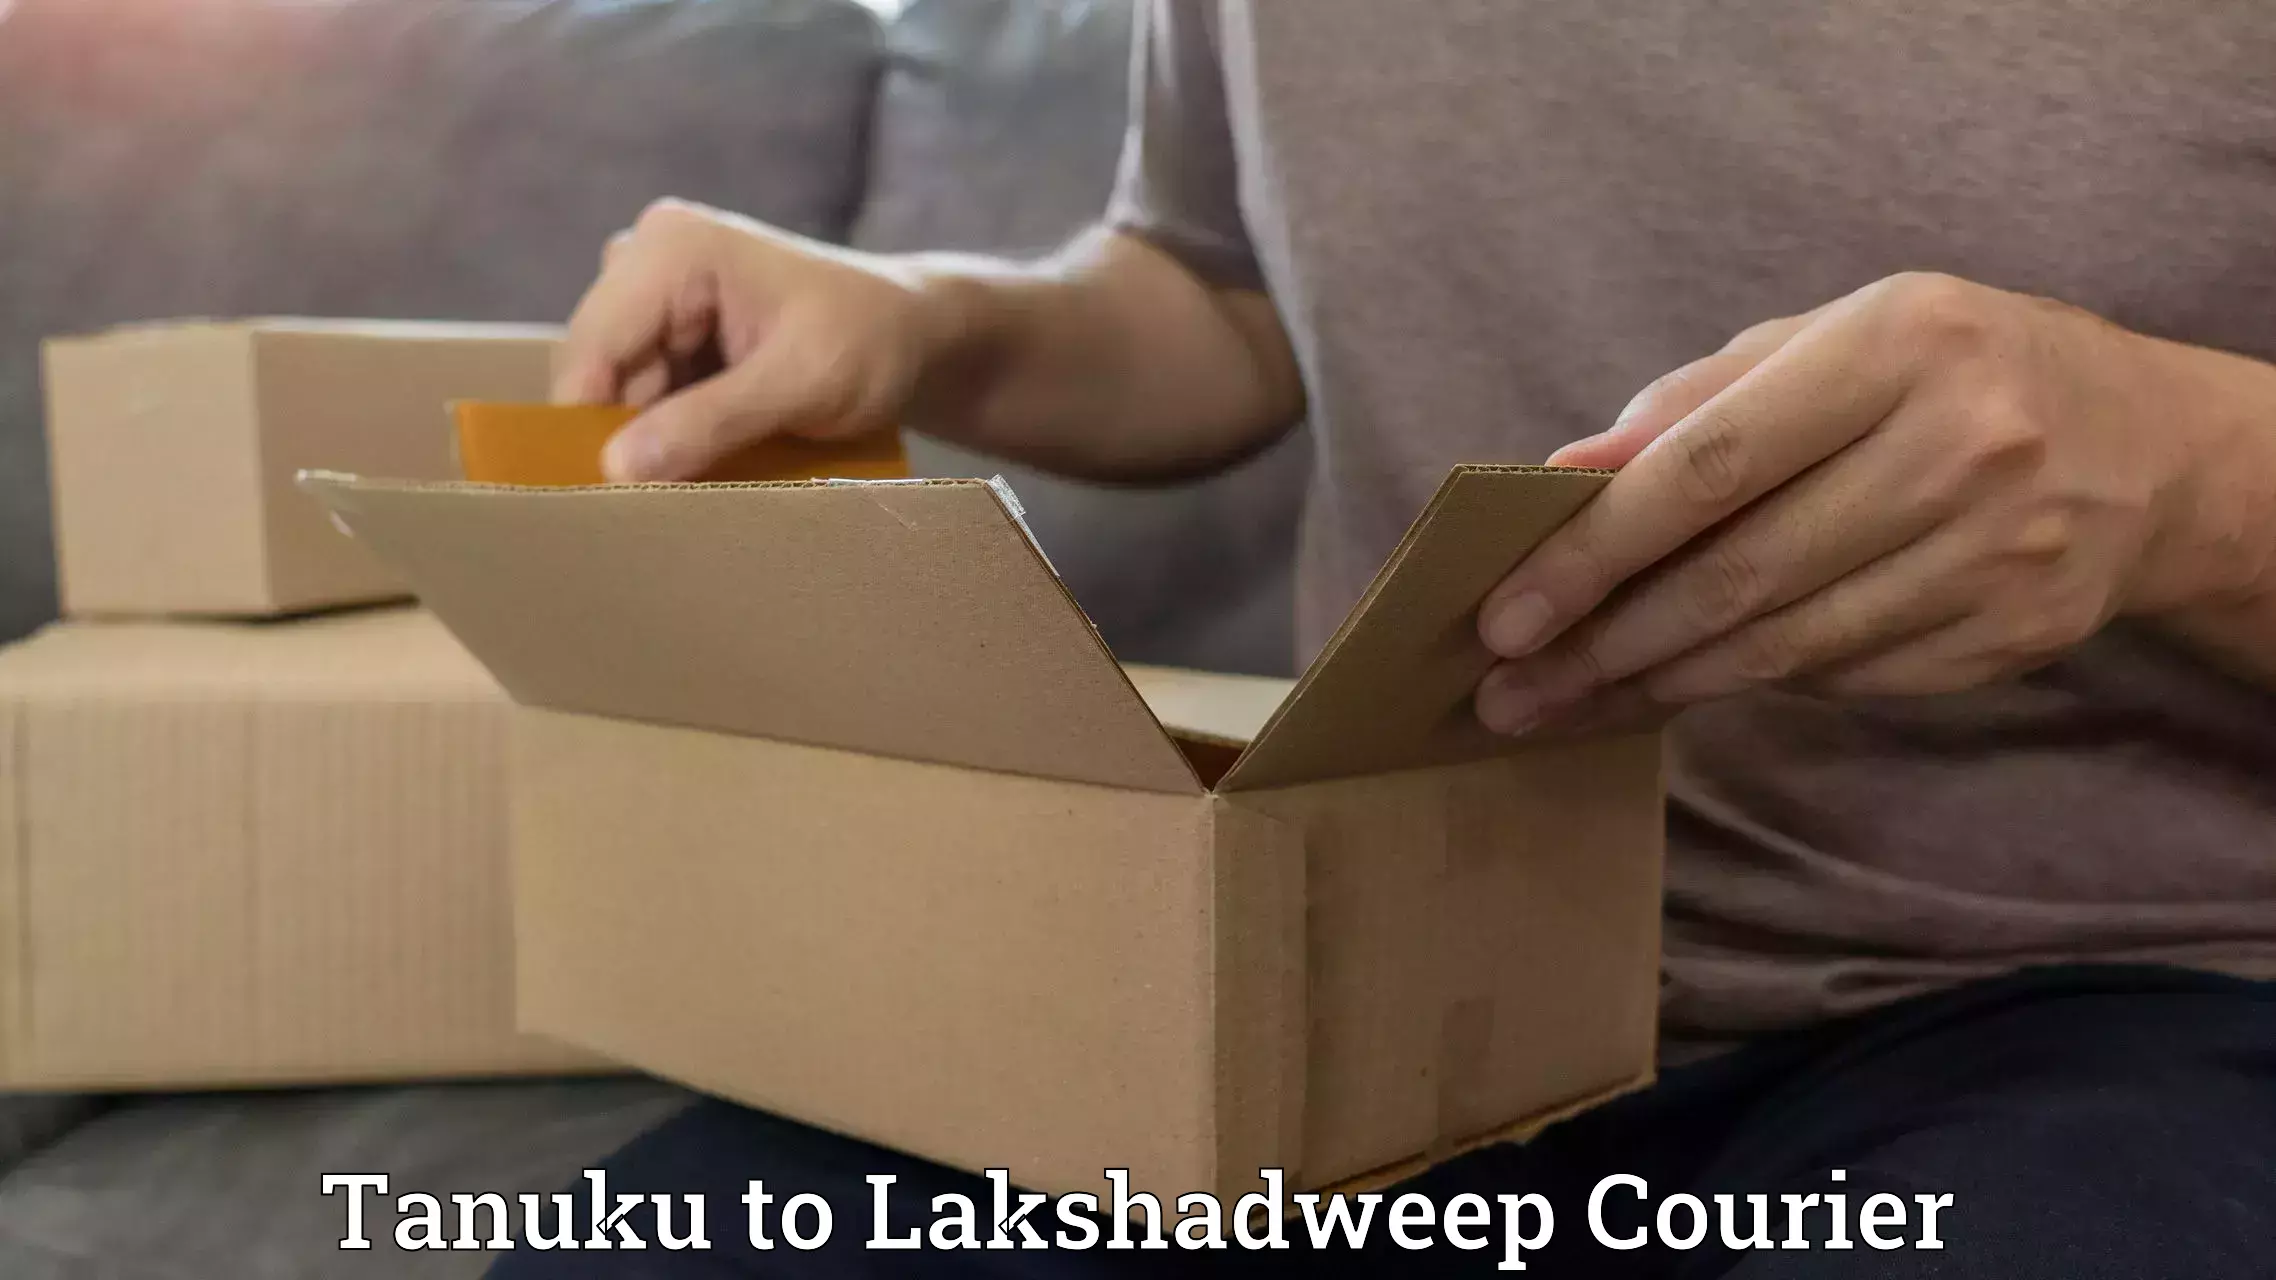 Budget-friendly shipping Tanuku to Lakshadweep